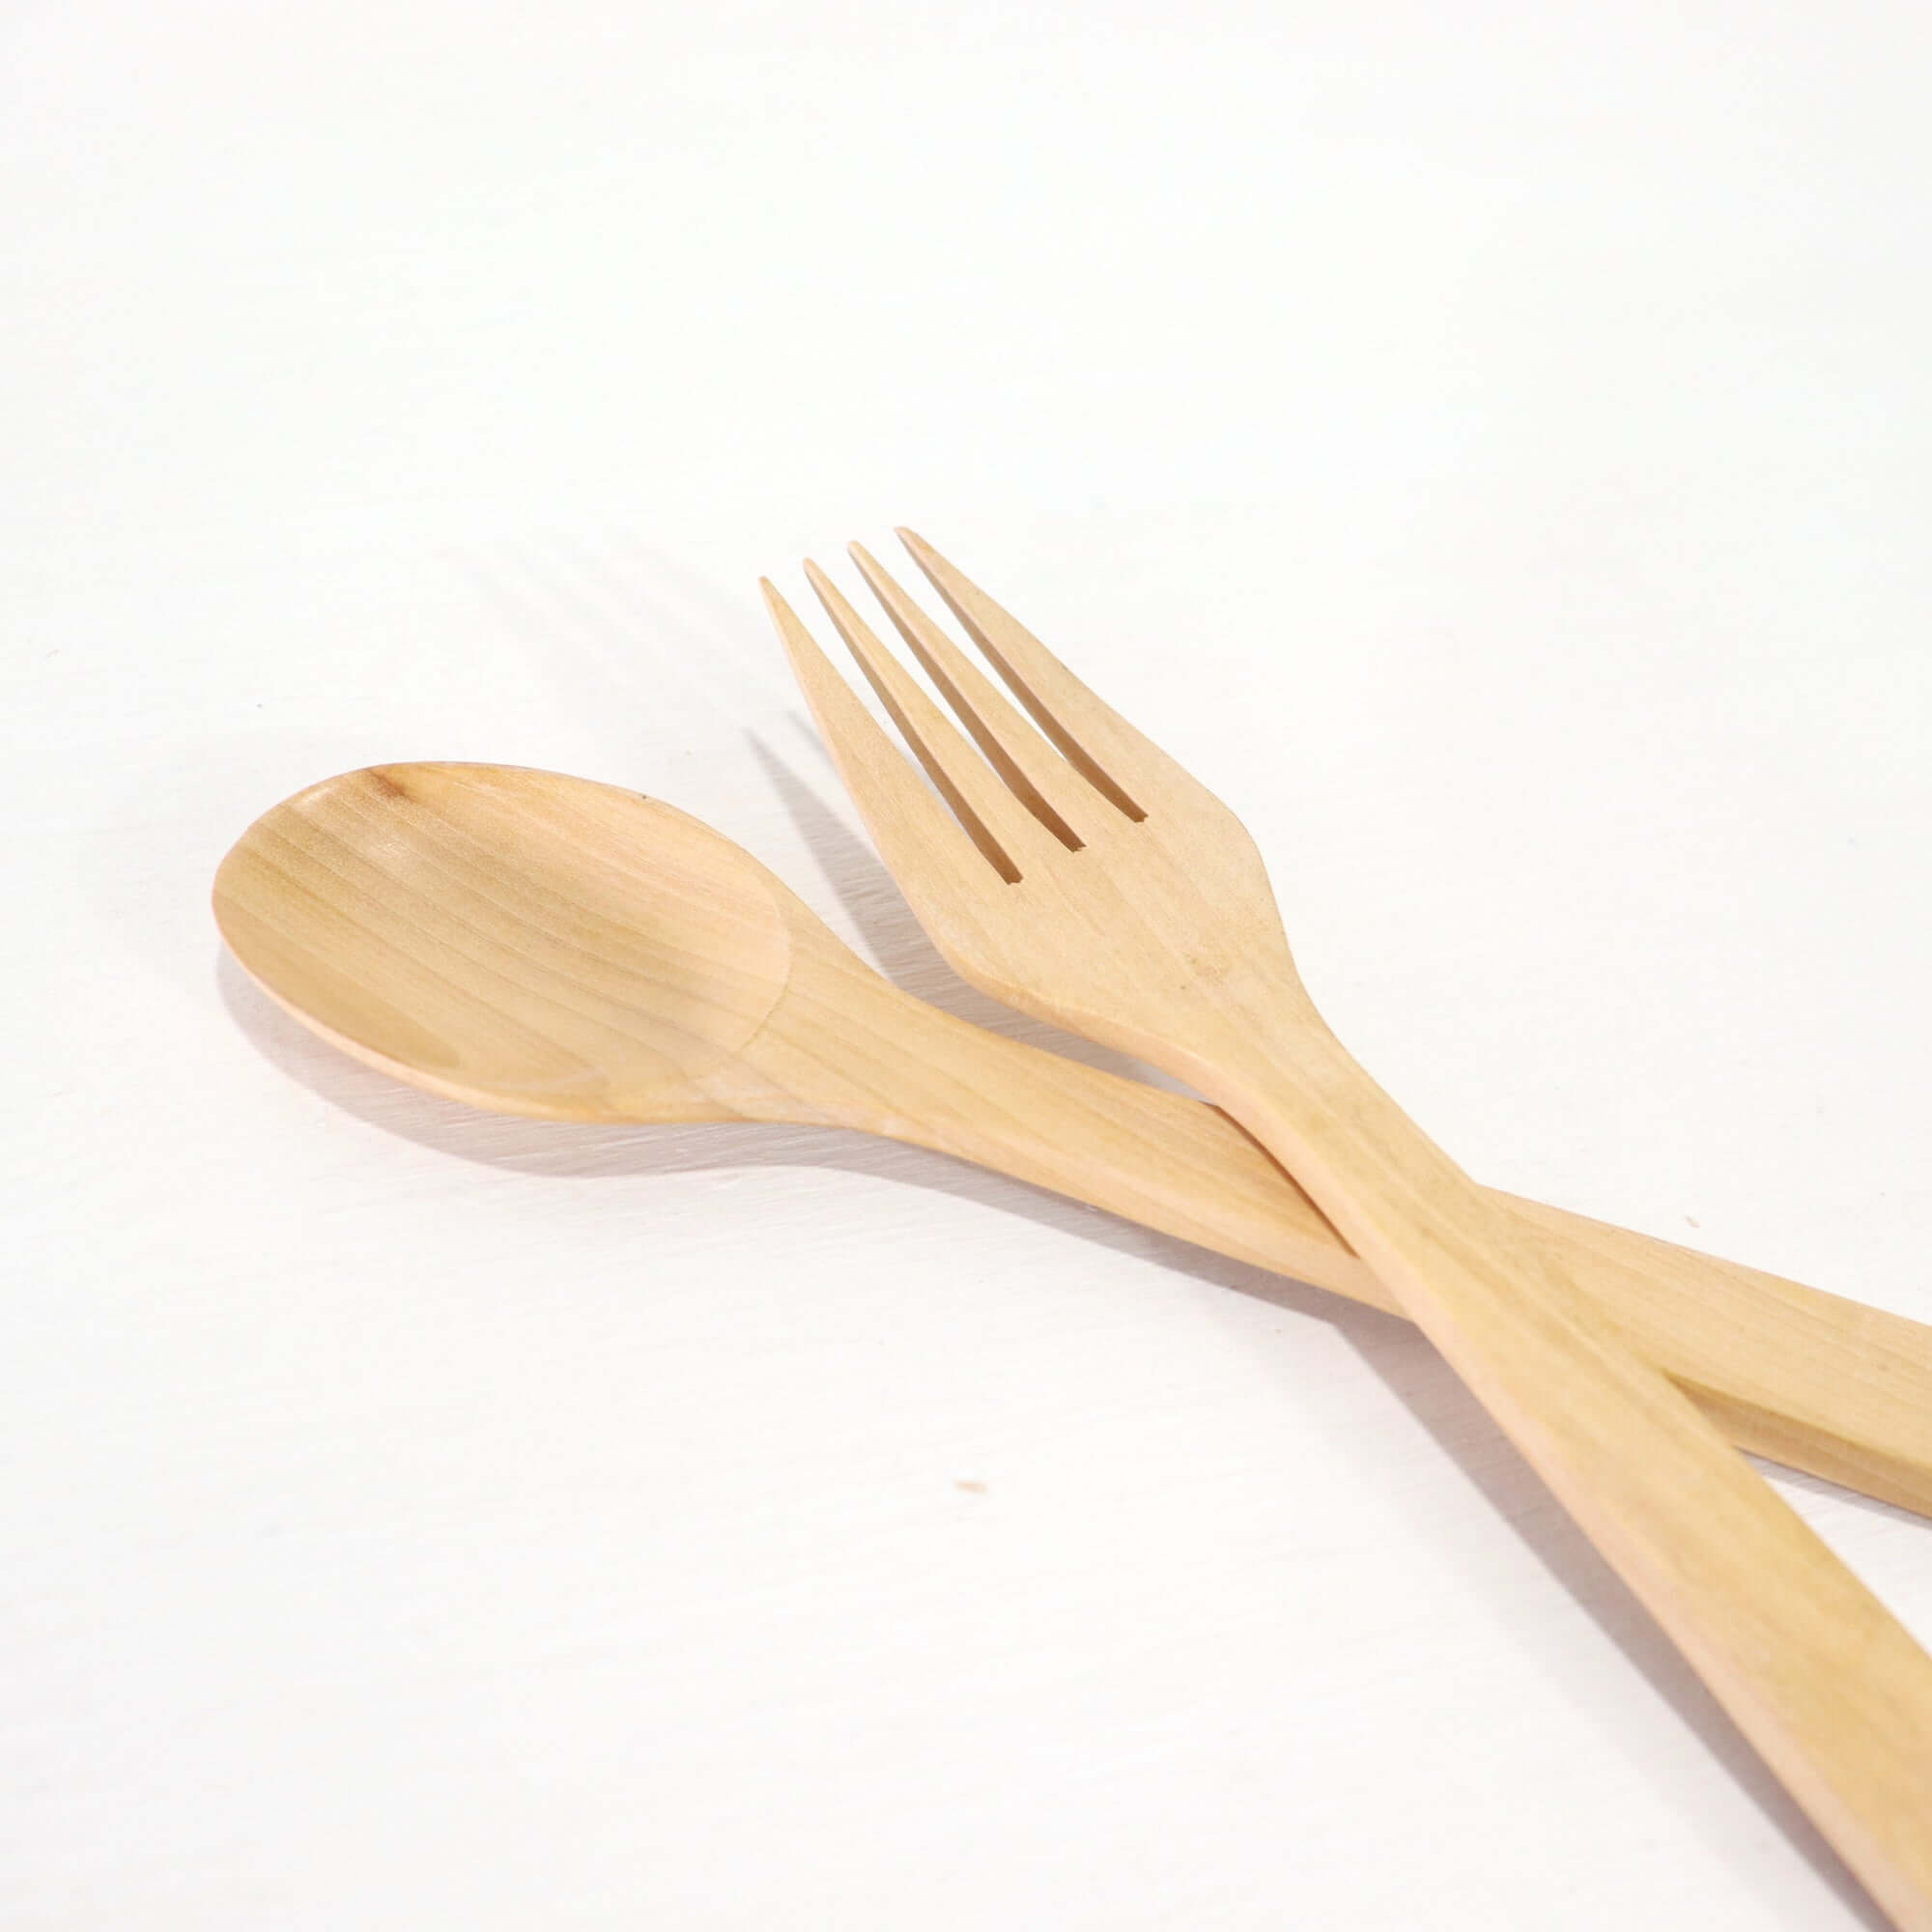 Cooking utensils & Cutlery